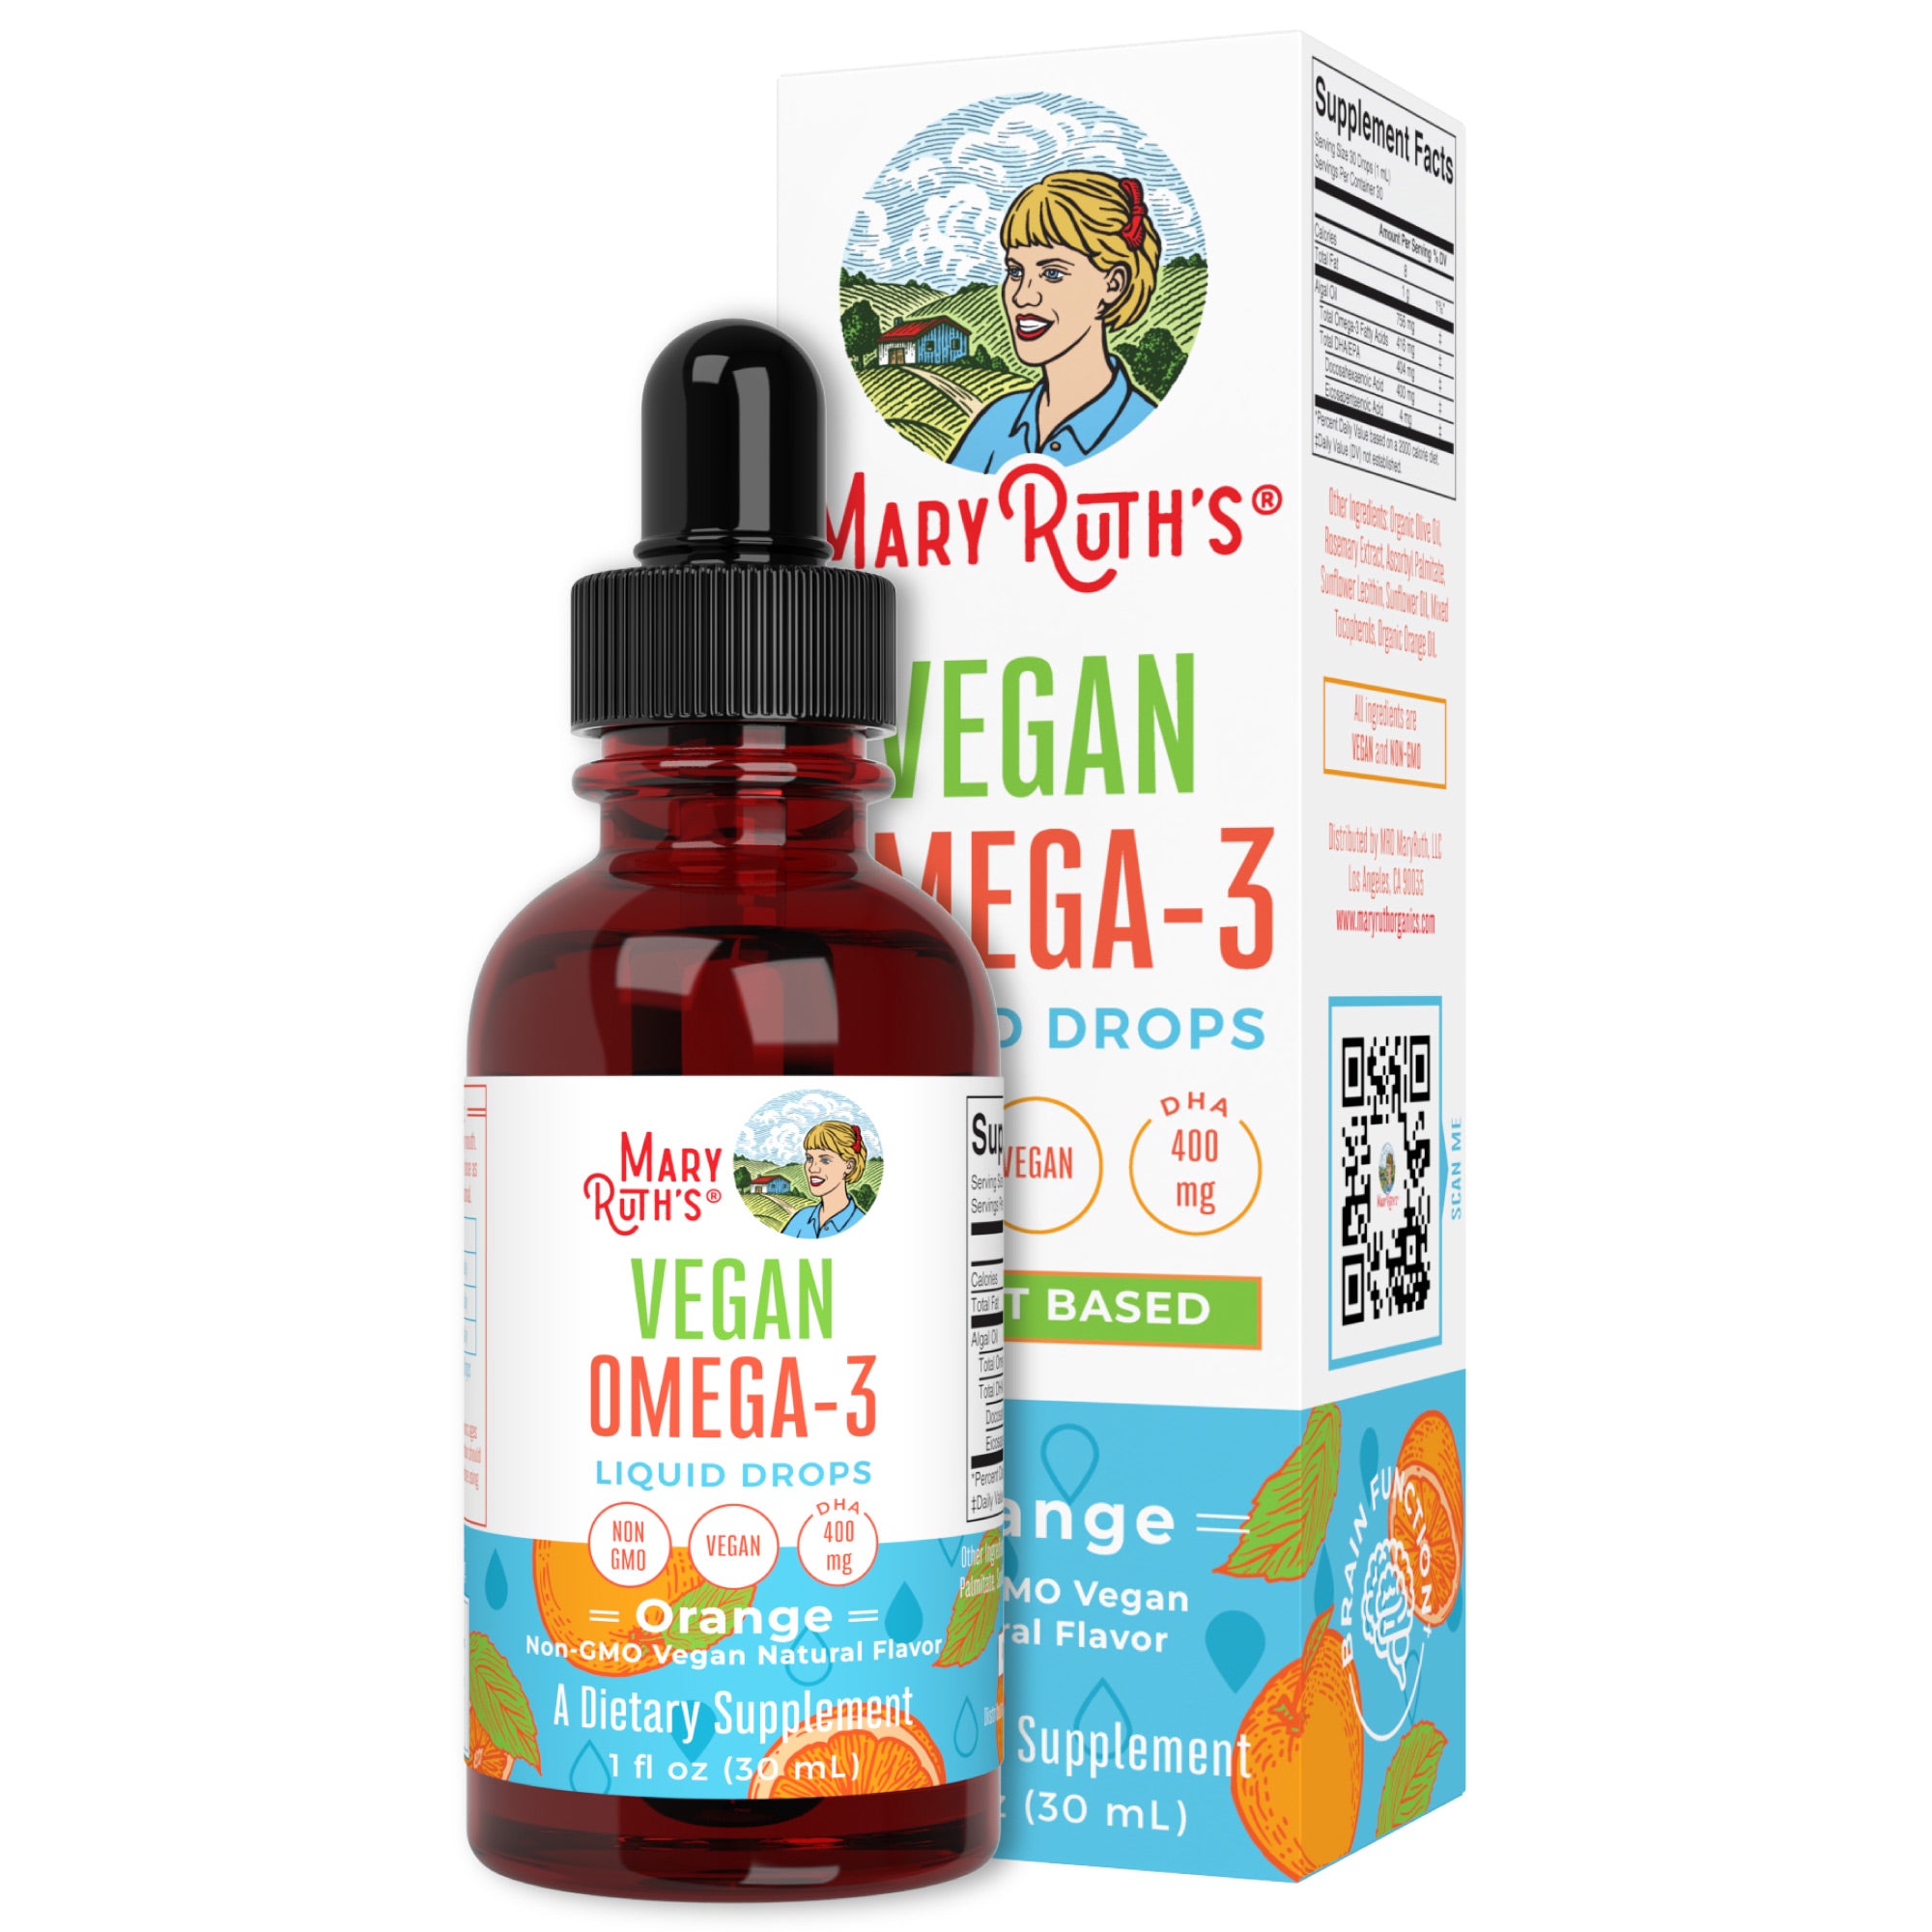 Vegan Omega-3 Liquid Drops